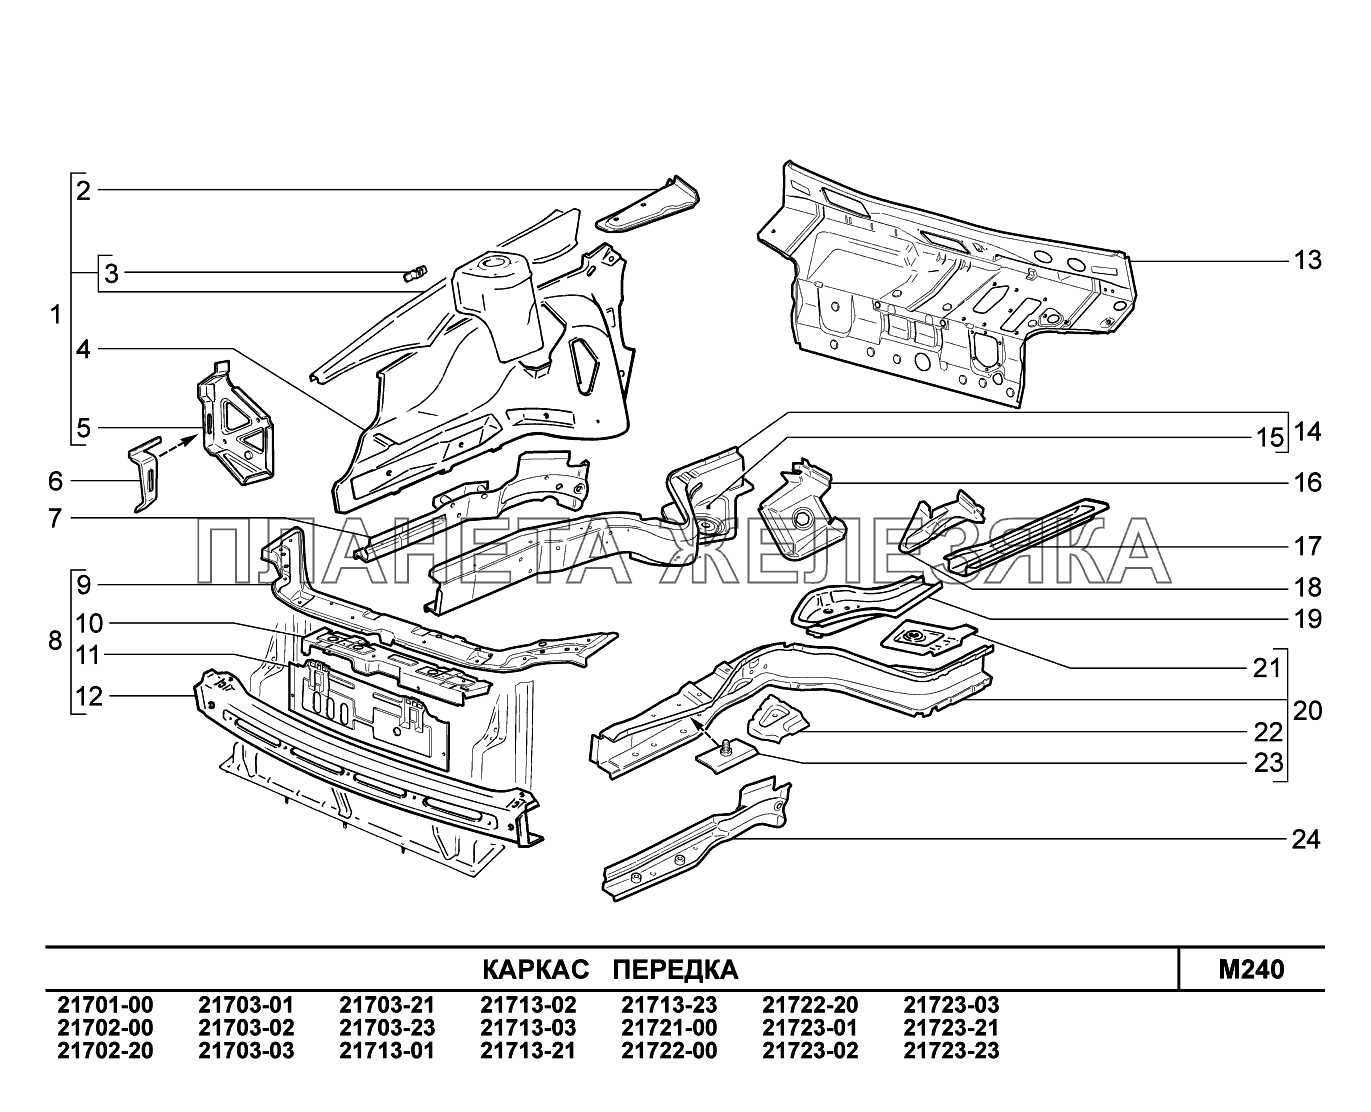 M240. Каркас передка ВАЗ-2170 